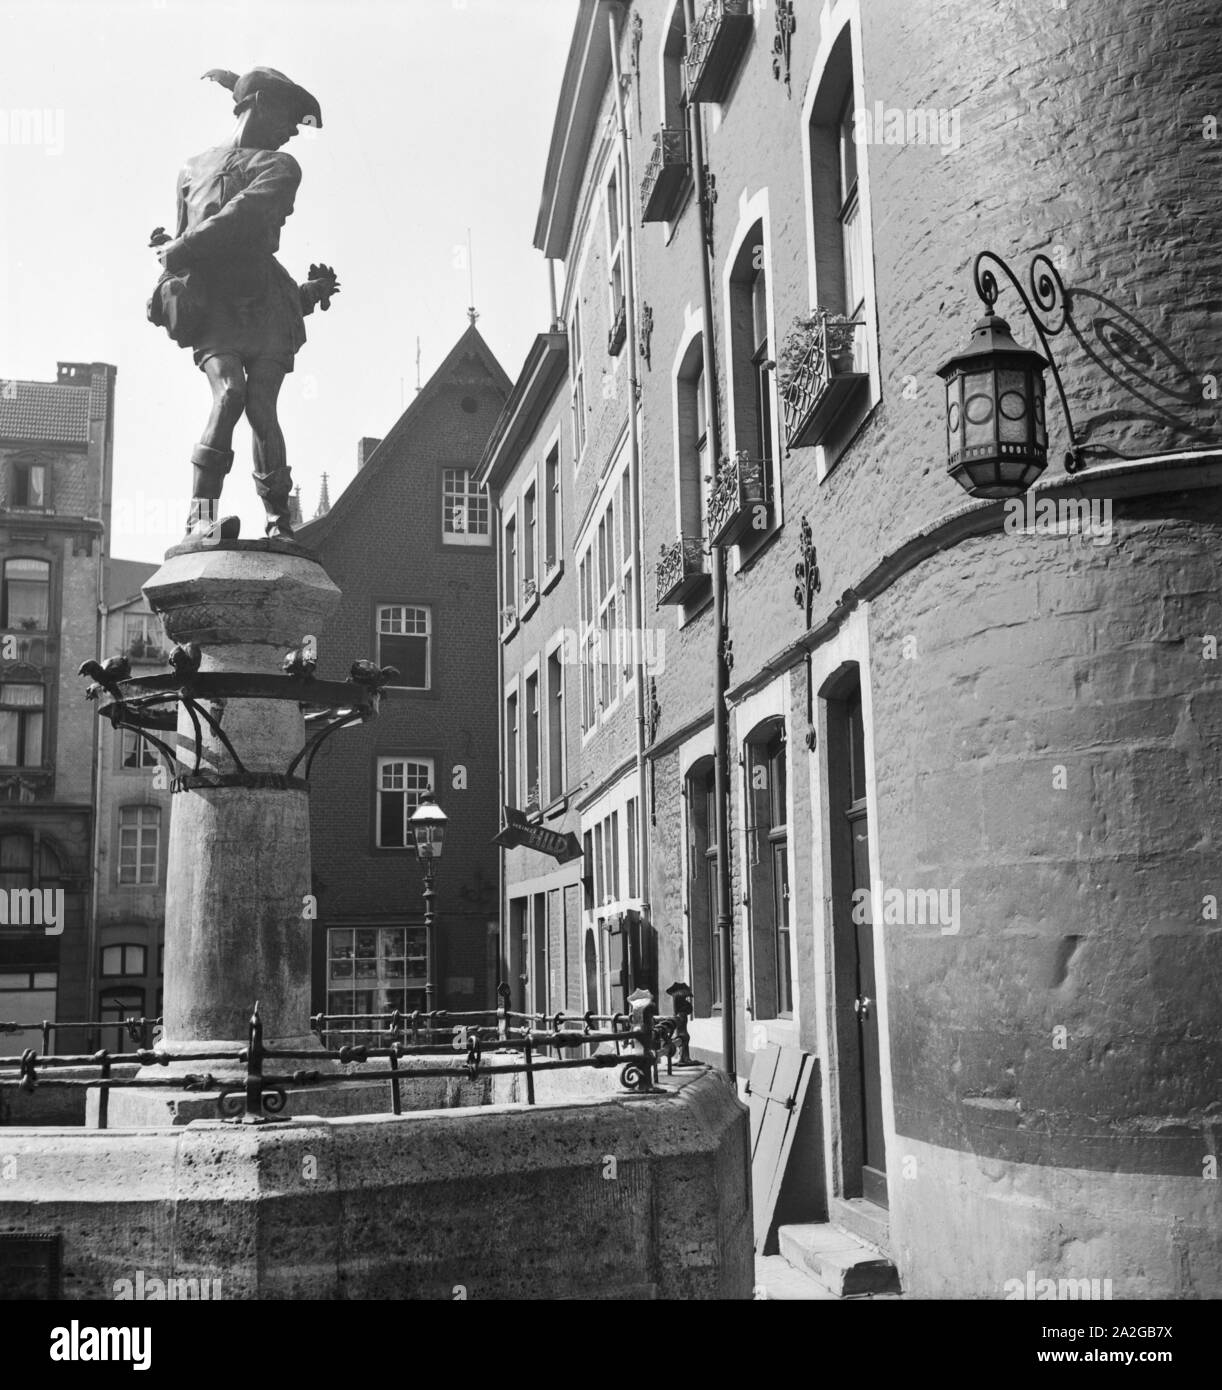 Das Hühnerdieb Brunnendenkmal auf dem Hühnermarkt in Aachen, Deutschland 1930er Jahre. The Huehnerdieb fountain showing a chicken thief at Huehnermarkt square in Aachen, Germany 1930s. Stock Photo